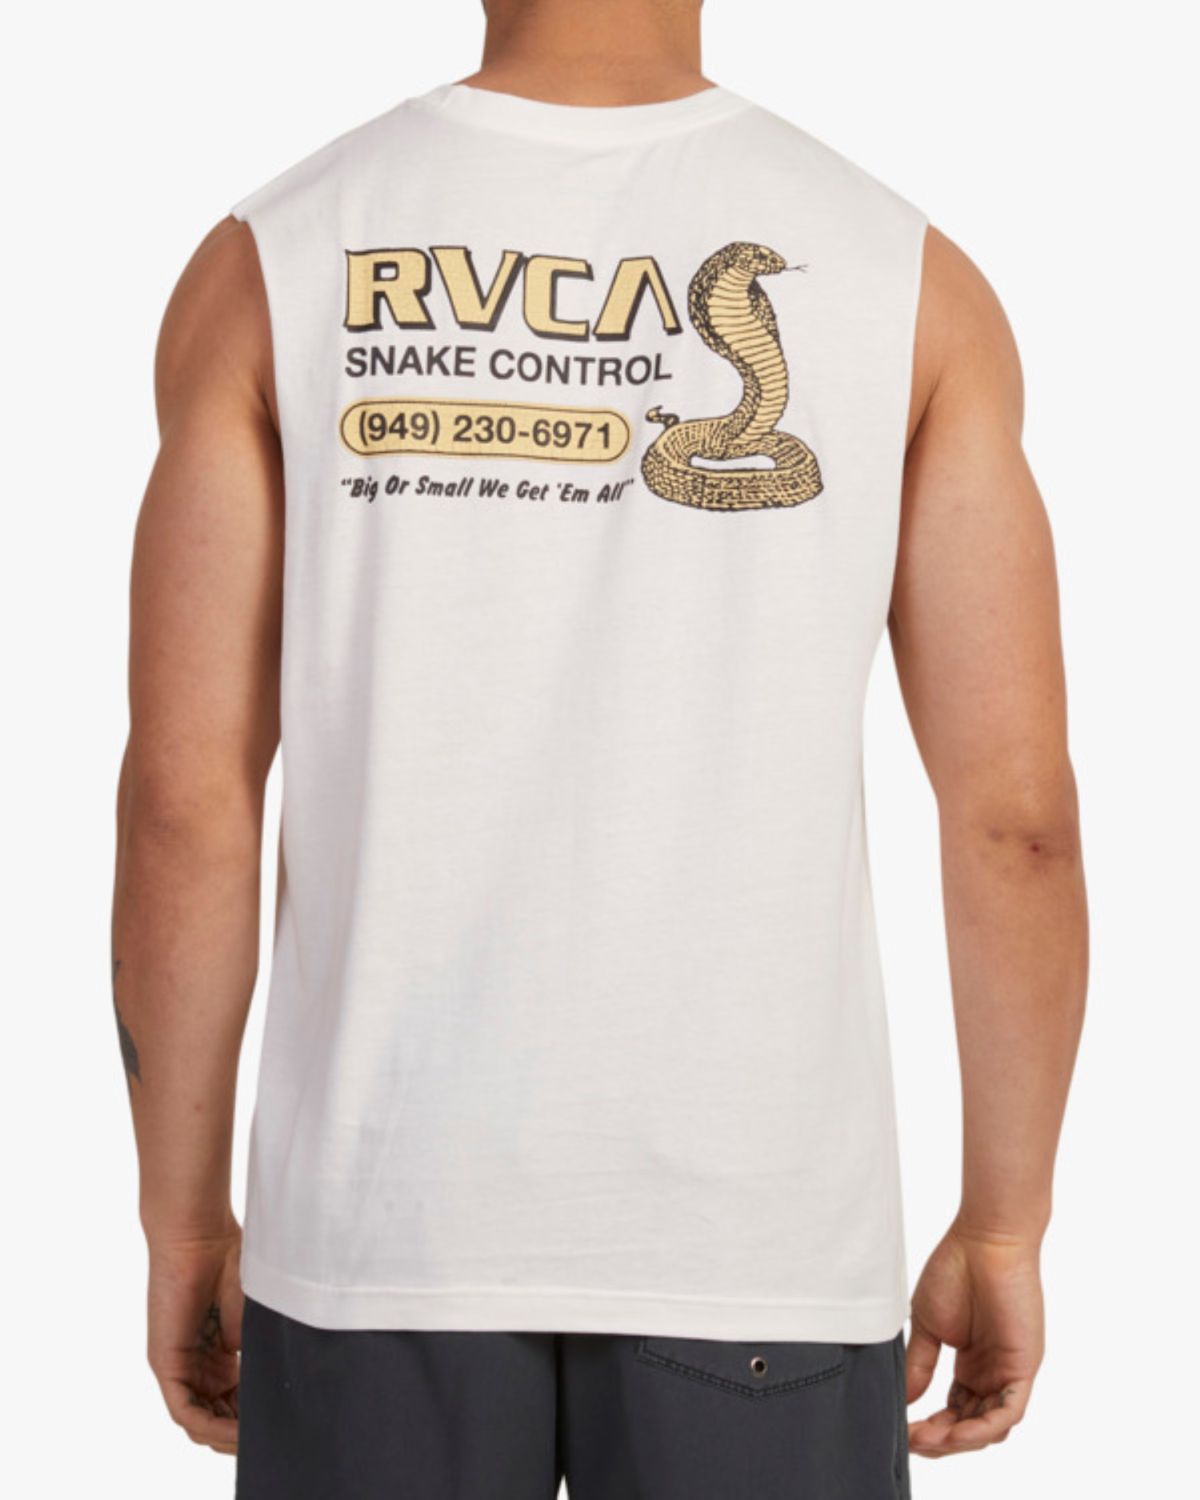  גופייה עם הדפס לוגו של RVCA